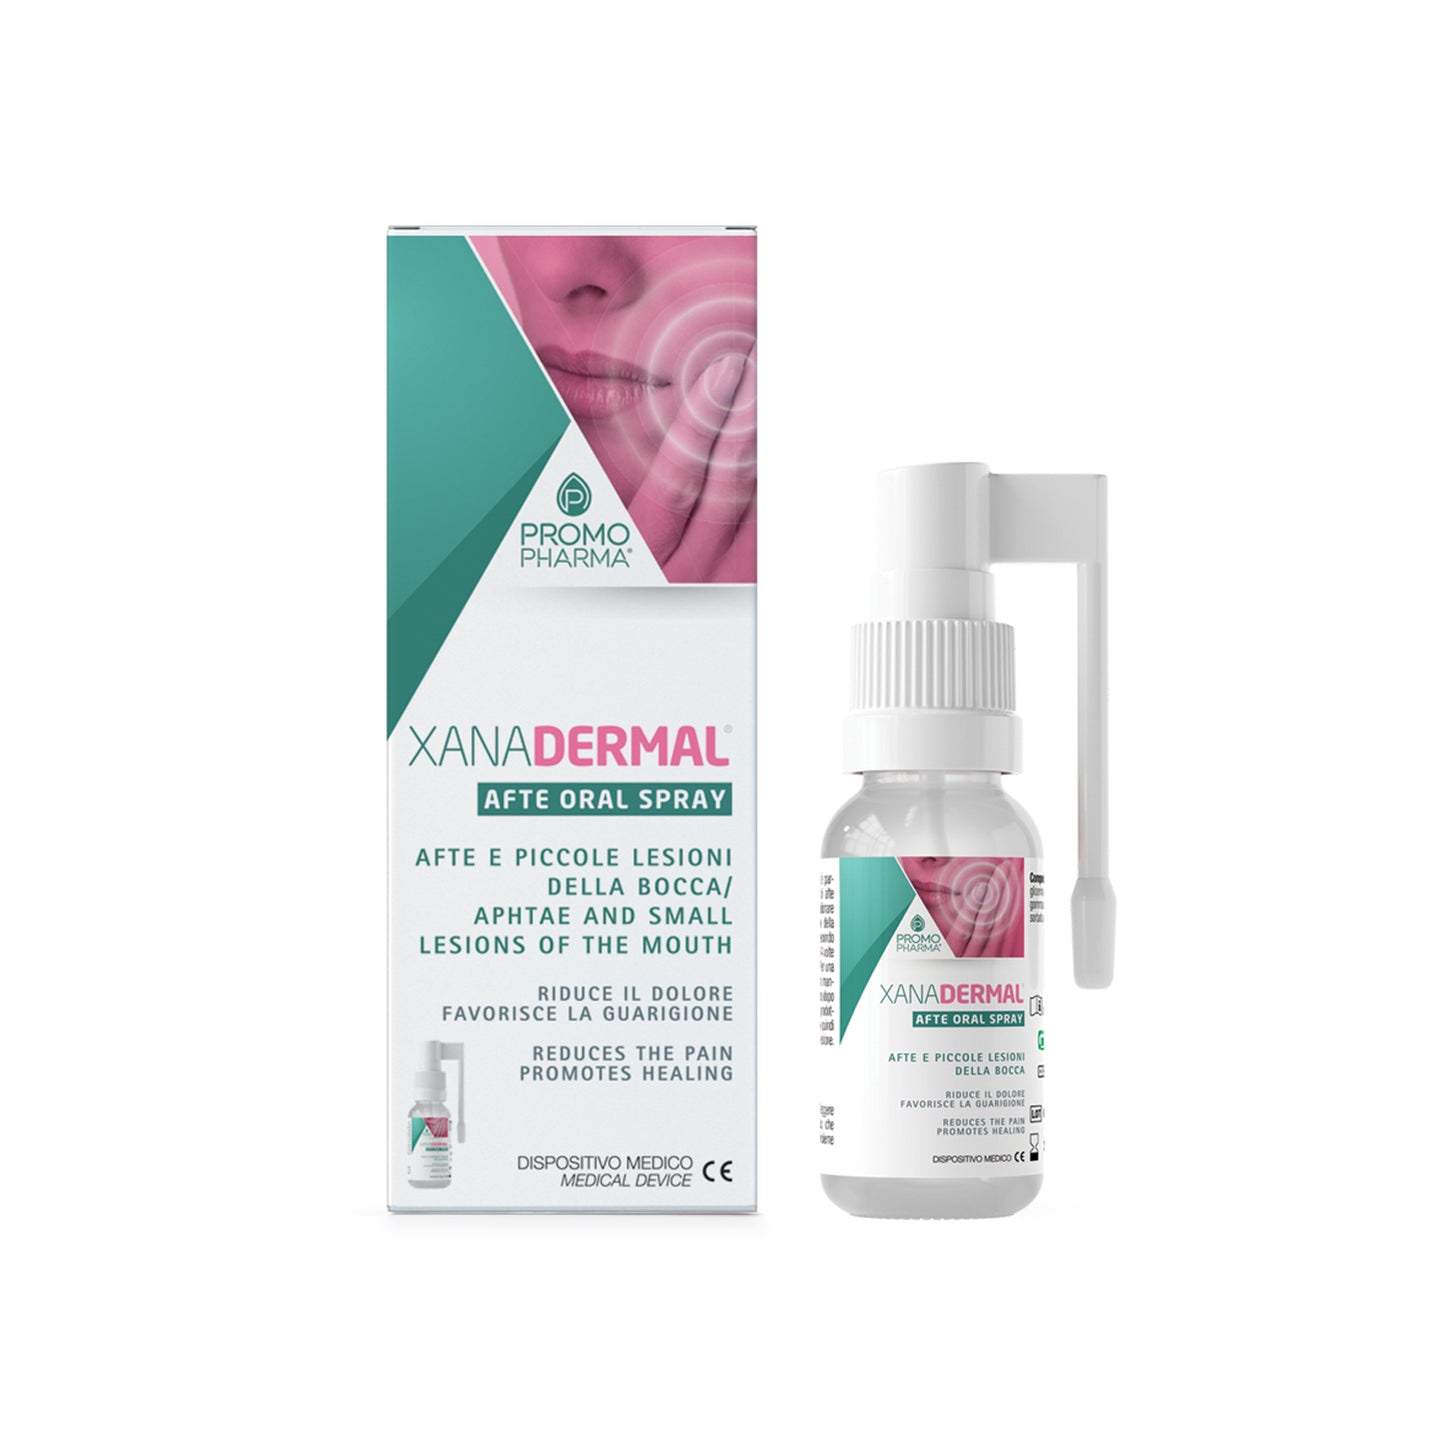 Xanadermal® Afte Oral Spray